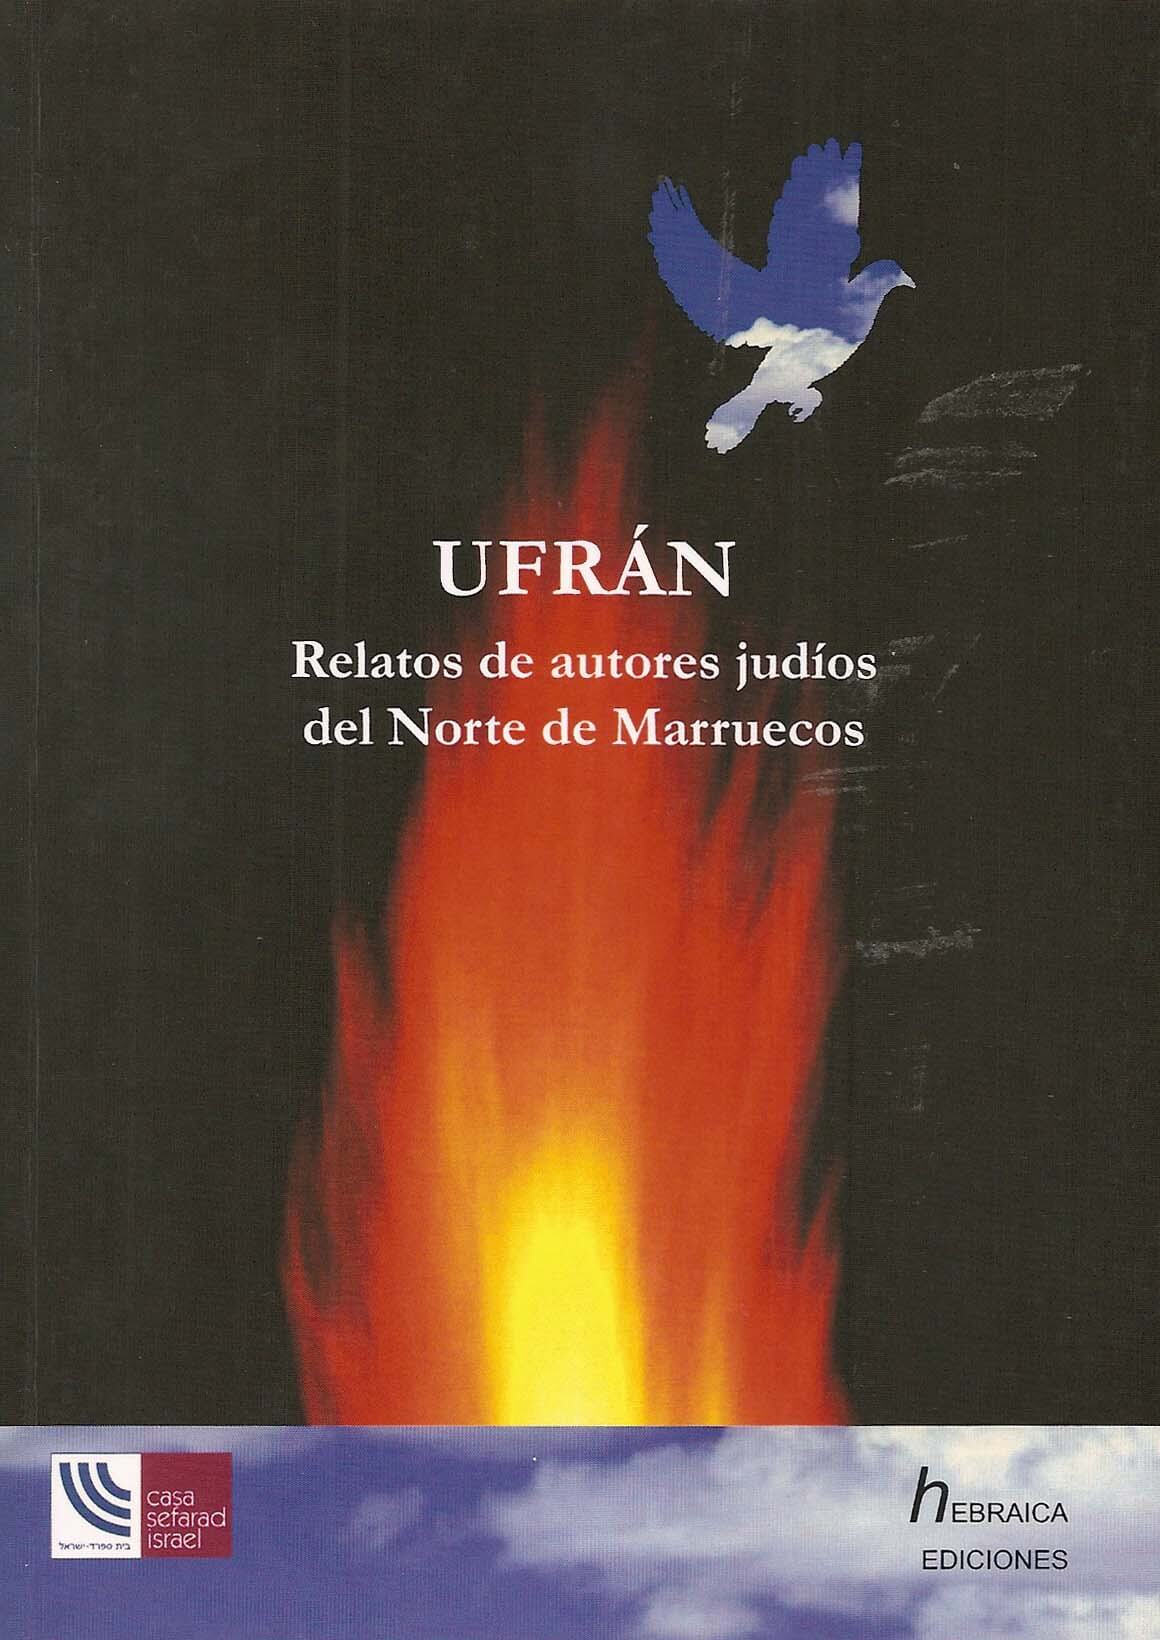 Ufrán. Relatos de autores judíos del Norte de Marruecos